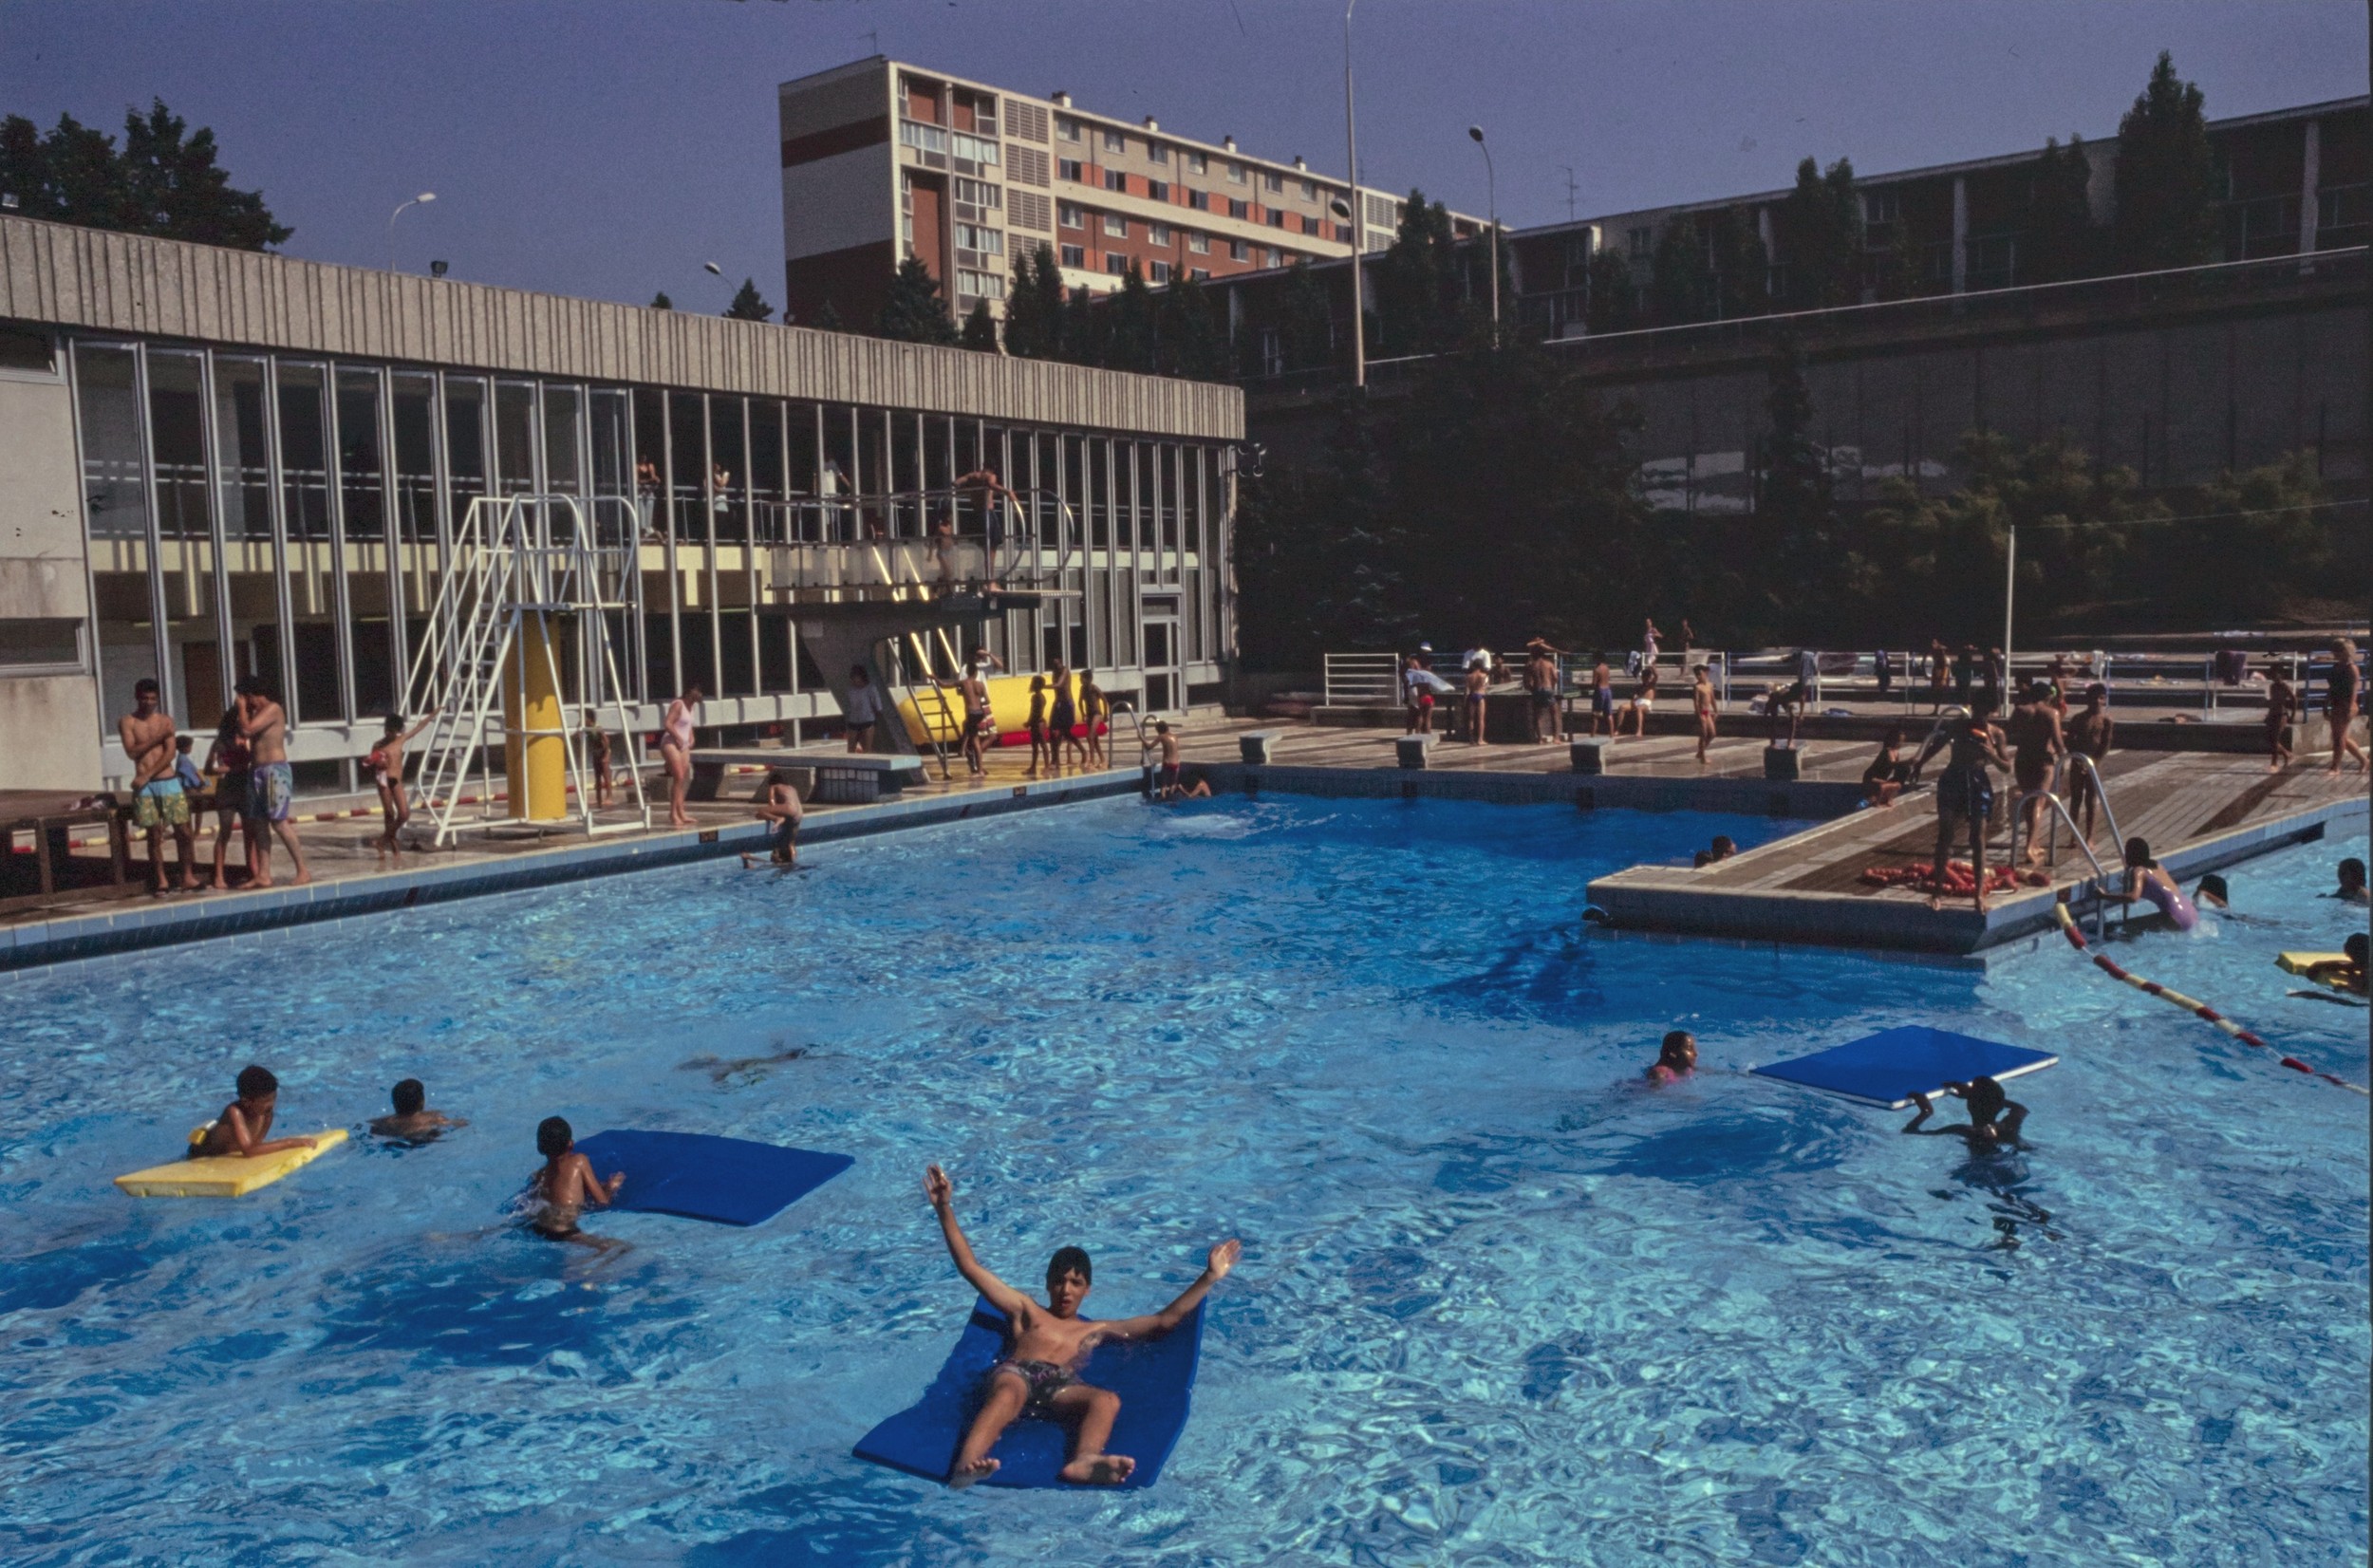 Visite de la piscine municipale Mermoz par Michel Noir et Henry Vianay : diapositive couleur par Piguet (1992, cote : 1518WP/1073, repro. commerciale interdite)